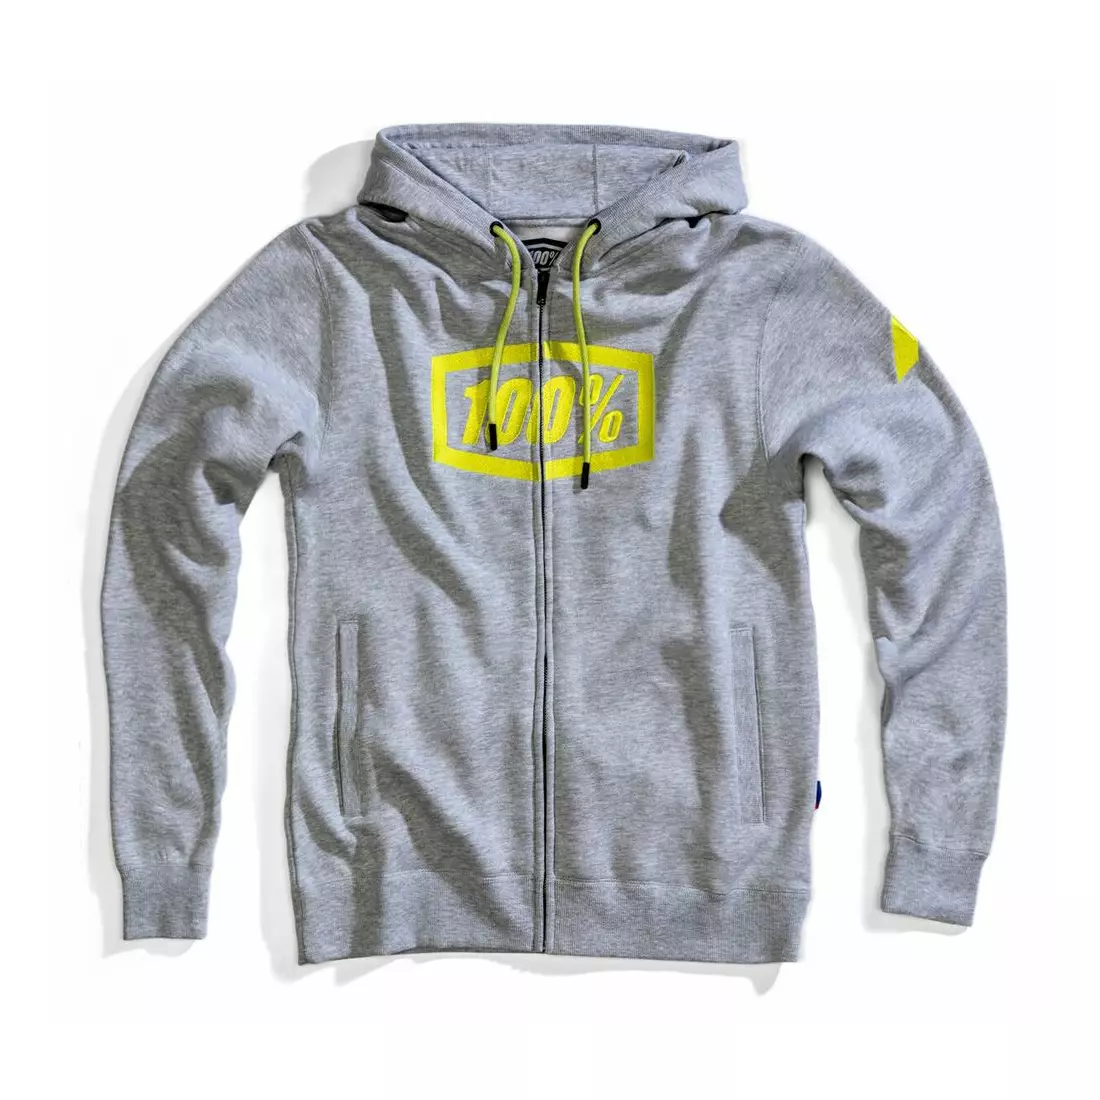 100% Herren Sport Sweatshirt syndicate hooded zip grey heather STO-36017-188-10